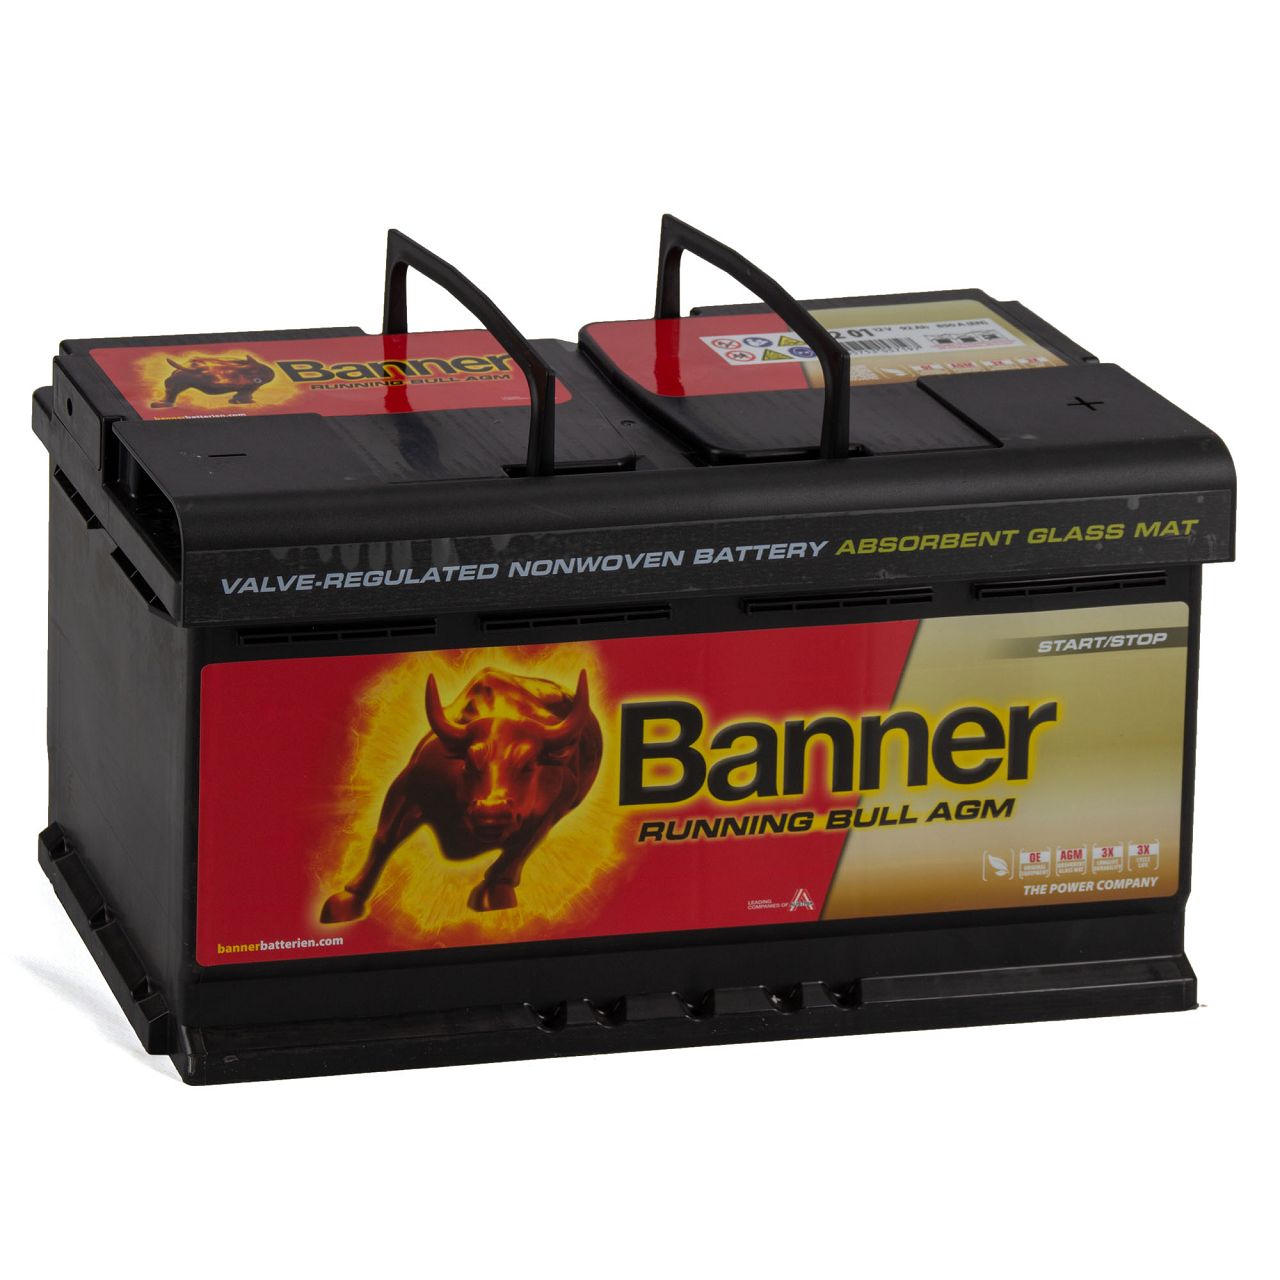 BANNER 59201 019AGMOE Running Bull AGM Autobatterie Batterie 12V 92Ah 850A